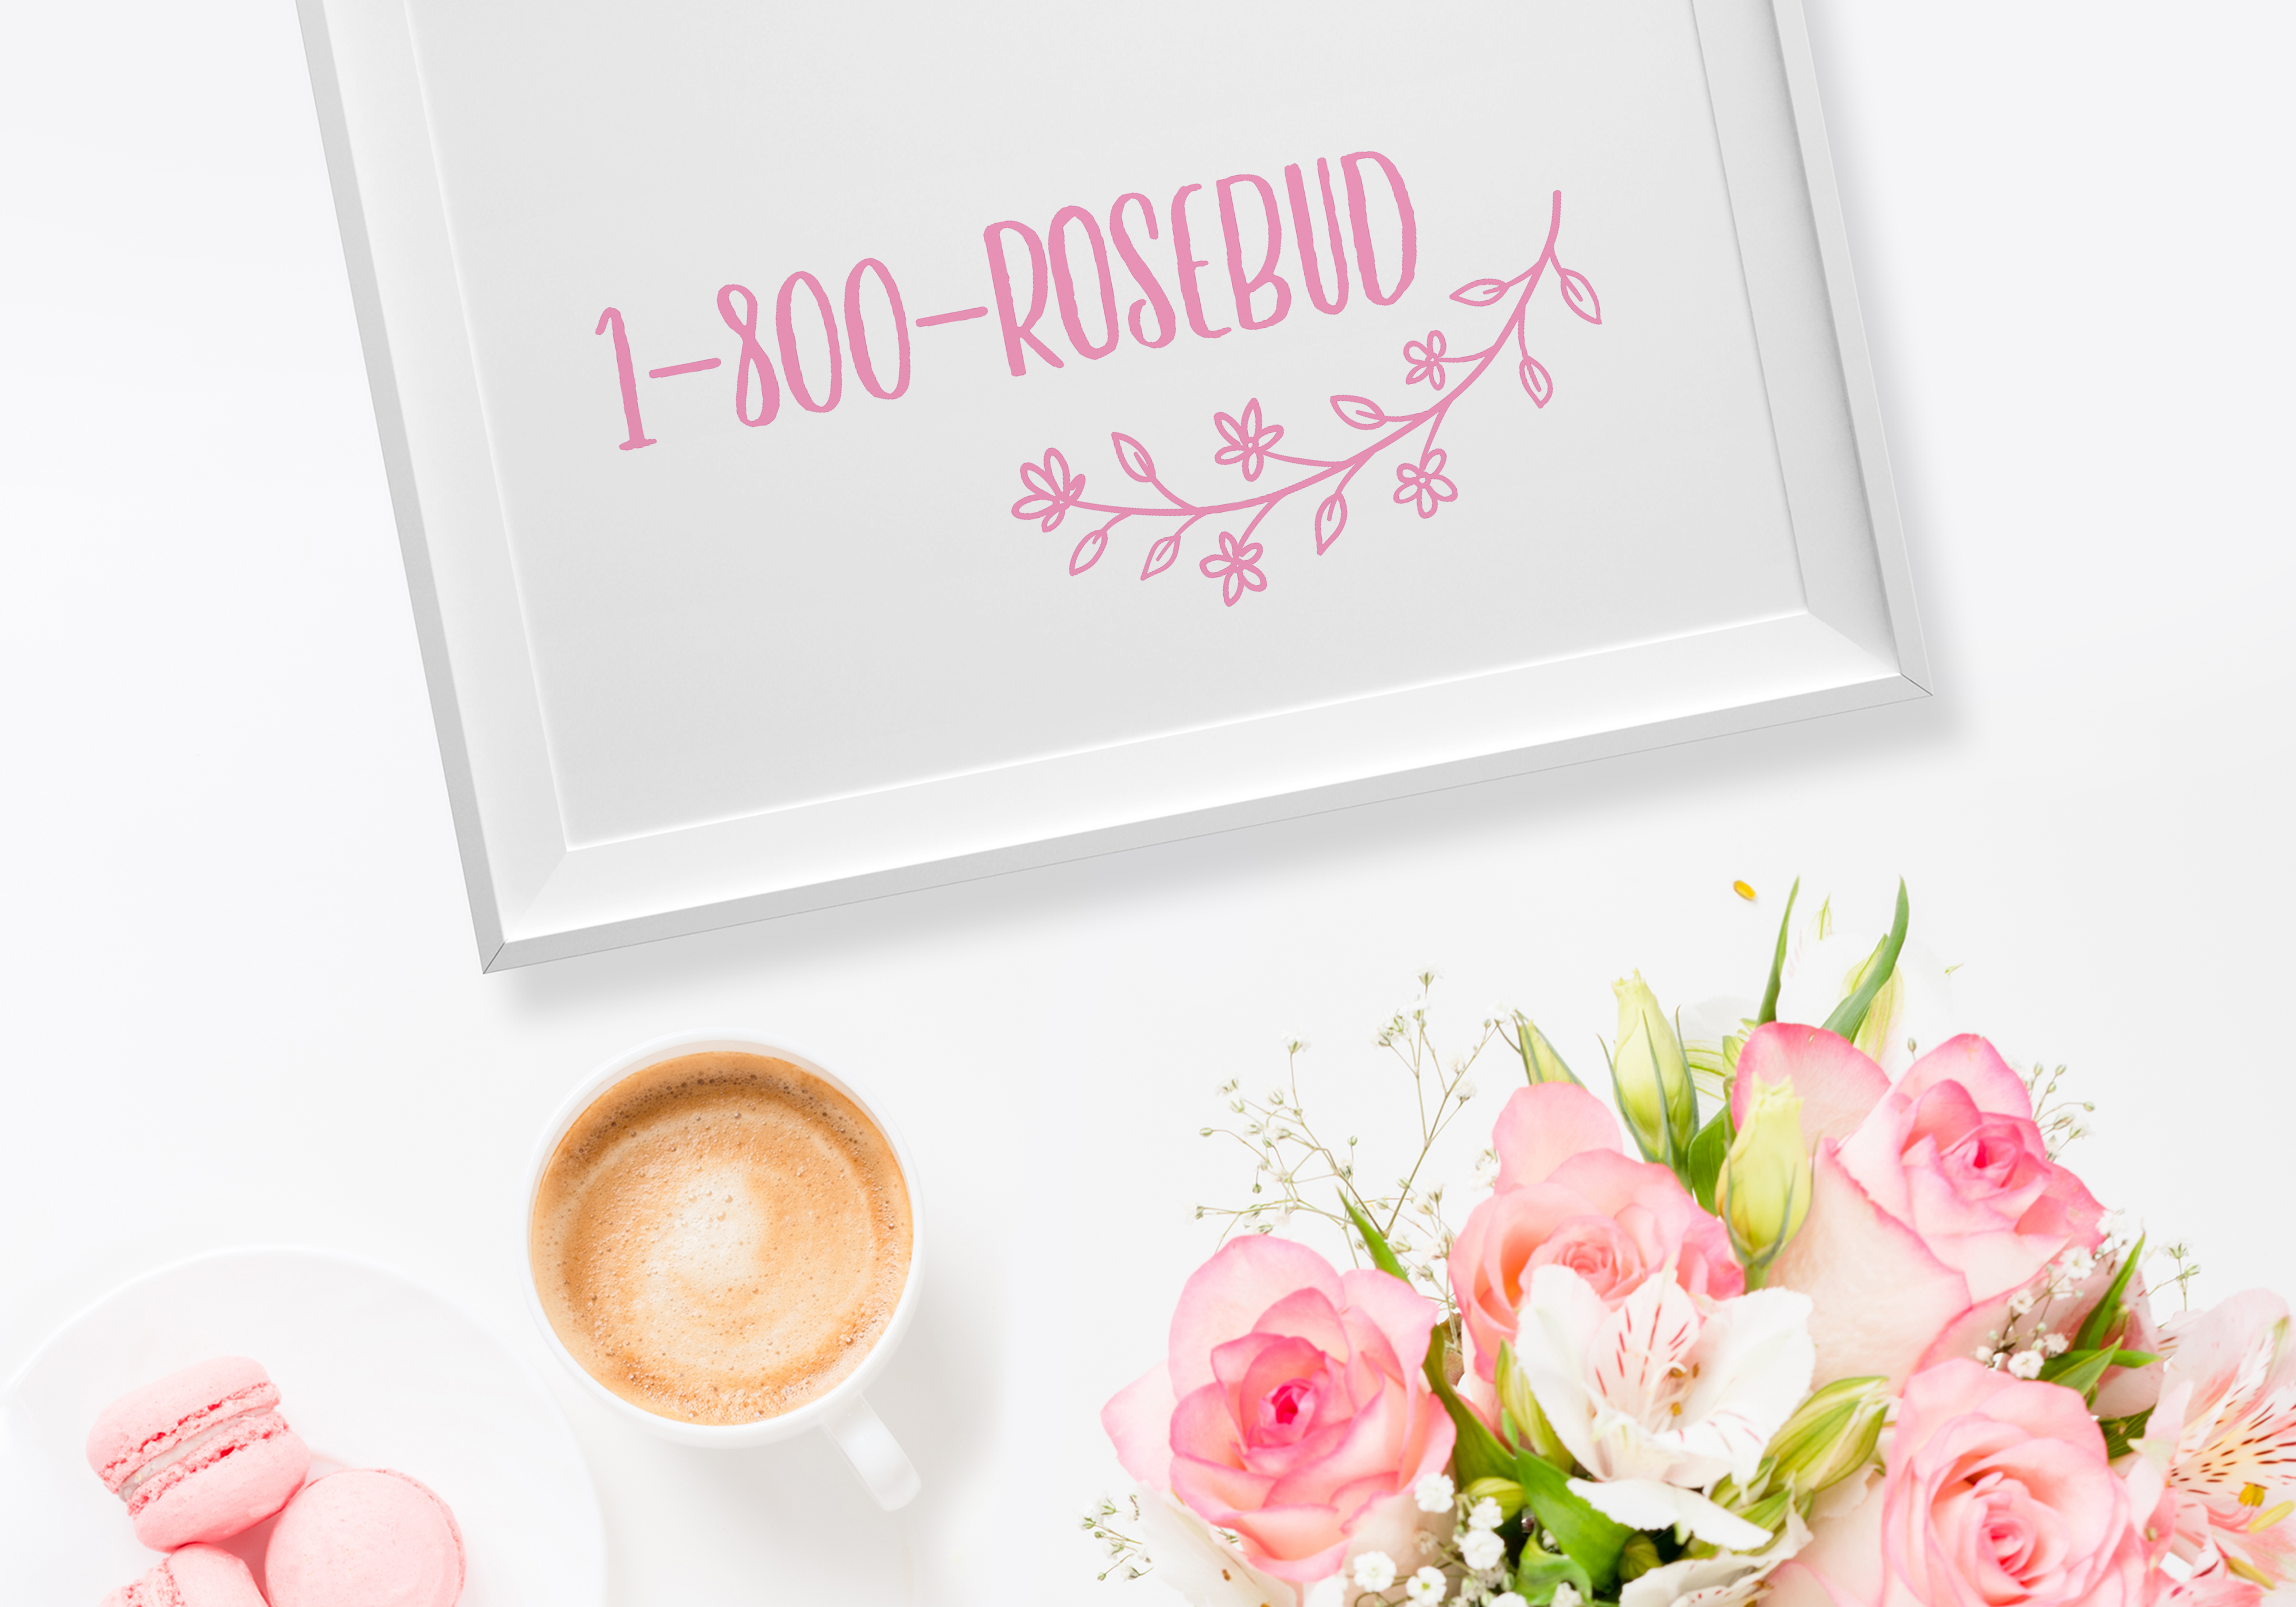 01-001_logo-rosebud-4000×2799